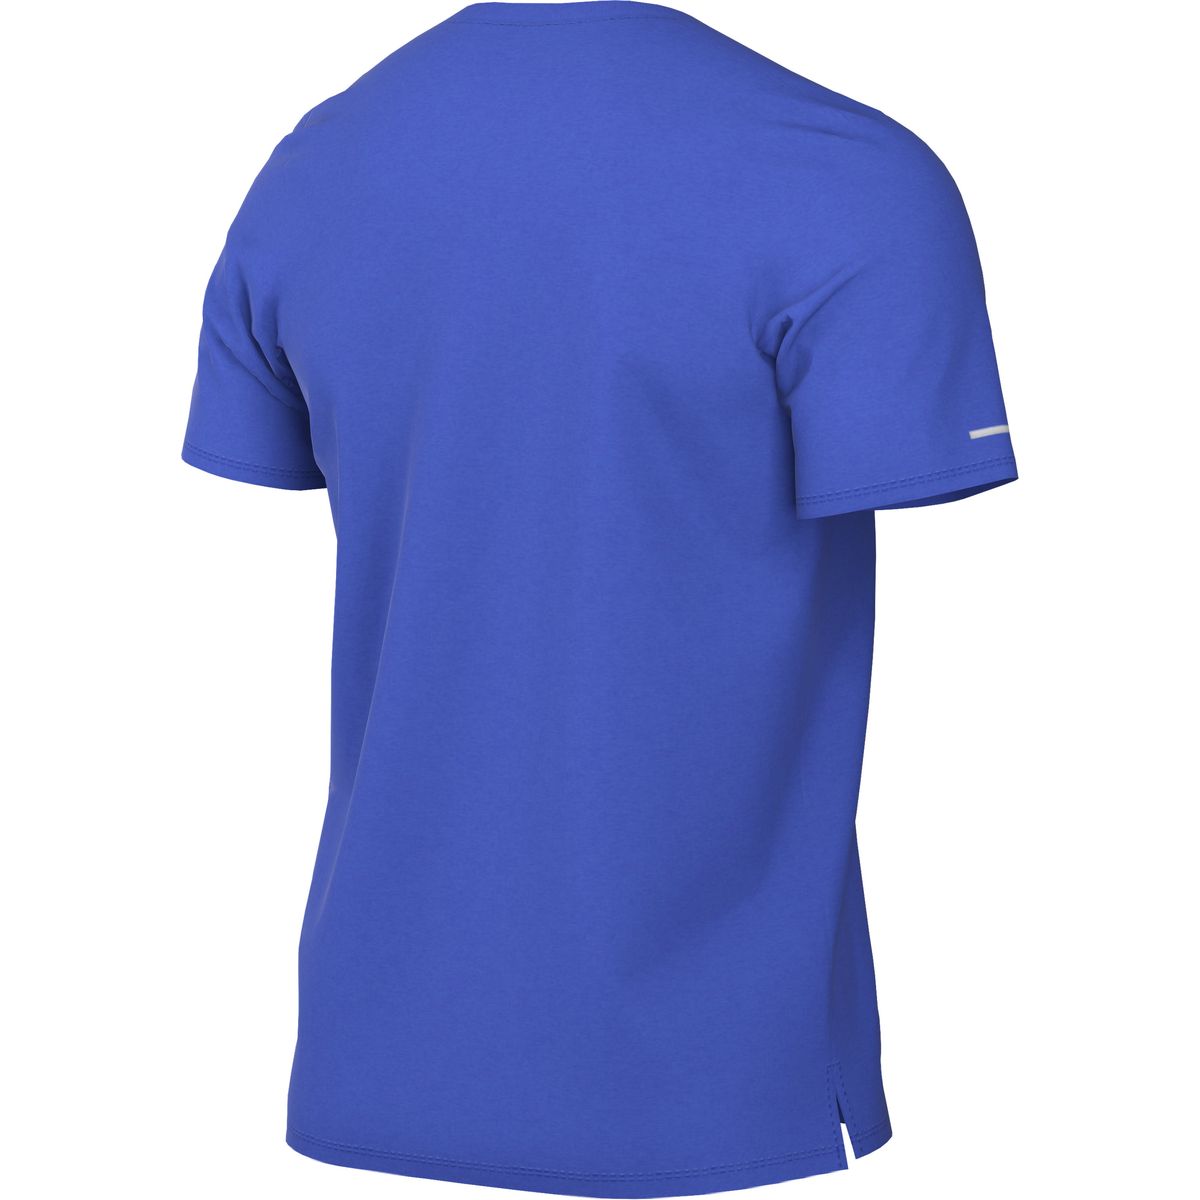 Nike Dri-FIT UV Run Division Miler Graphic Top Herren T-Shirt_1